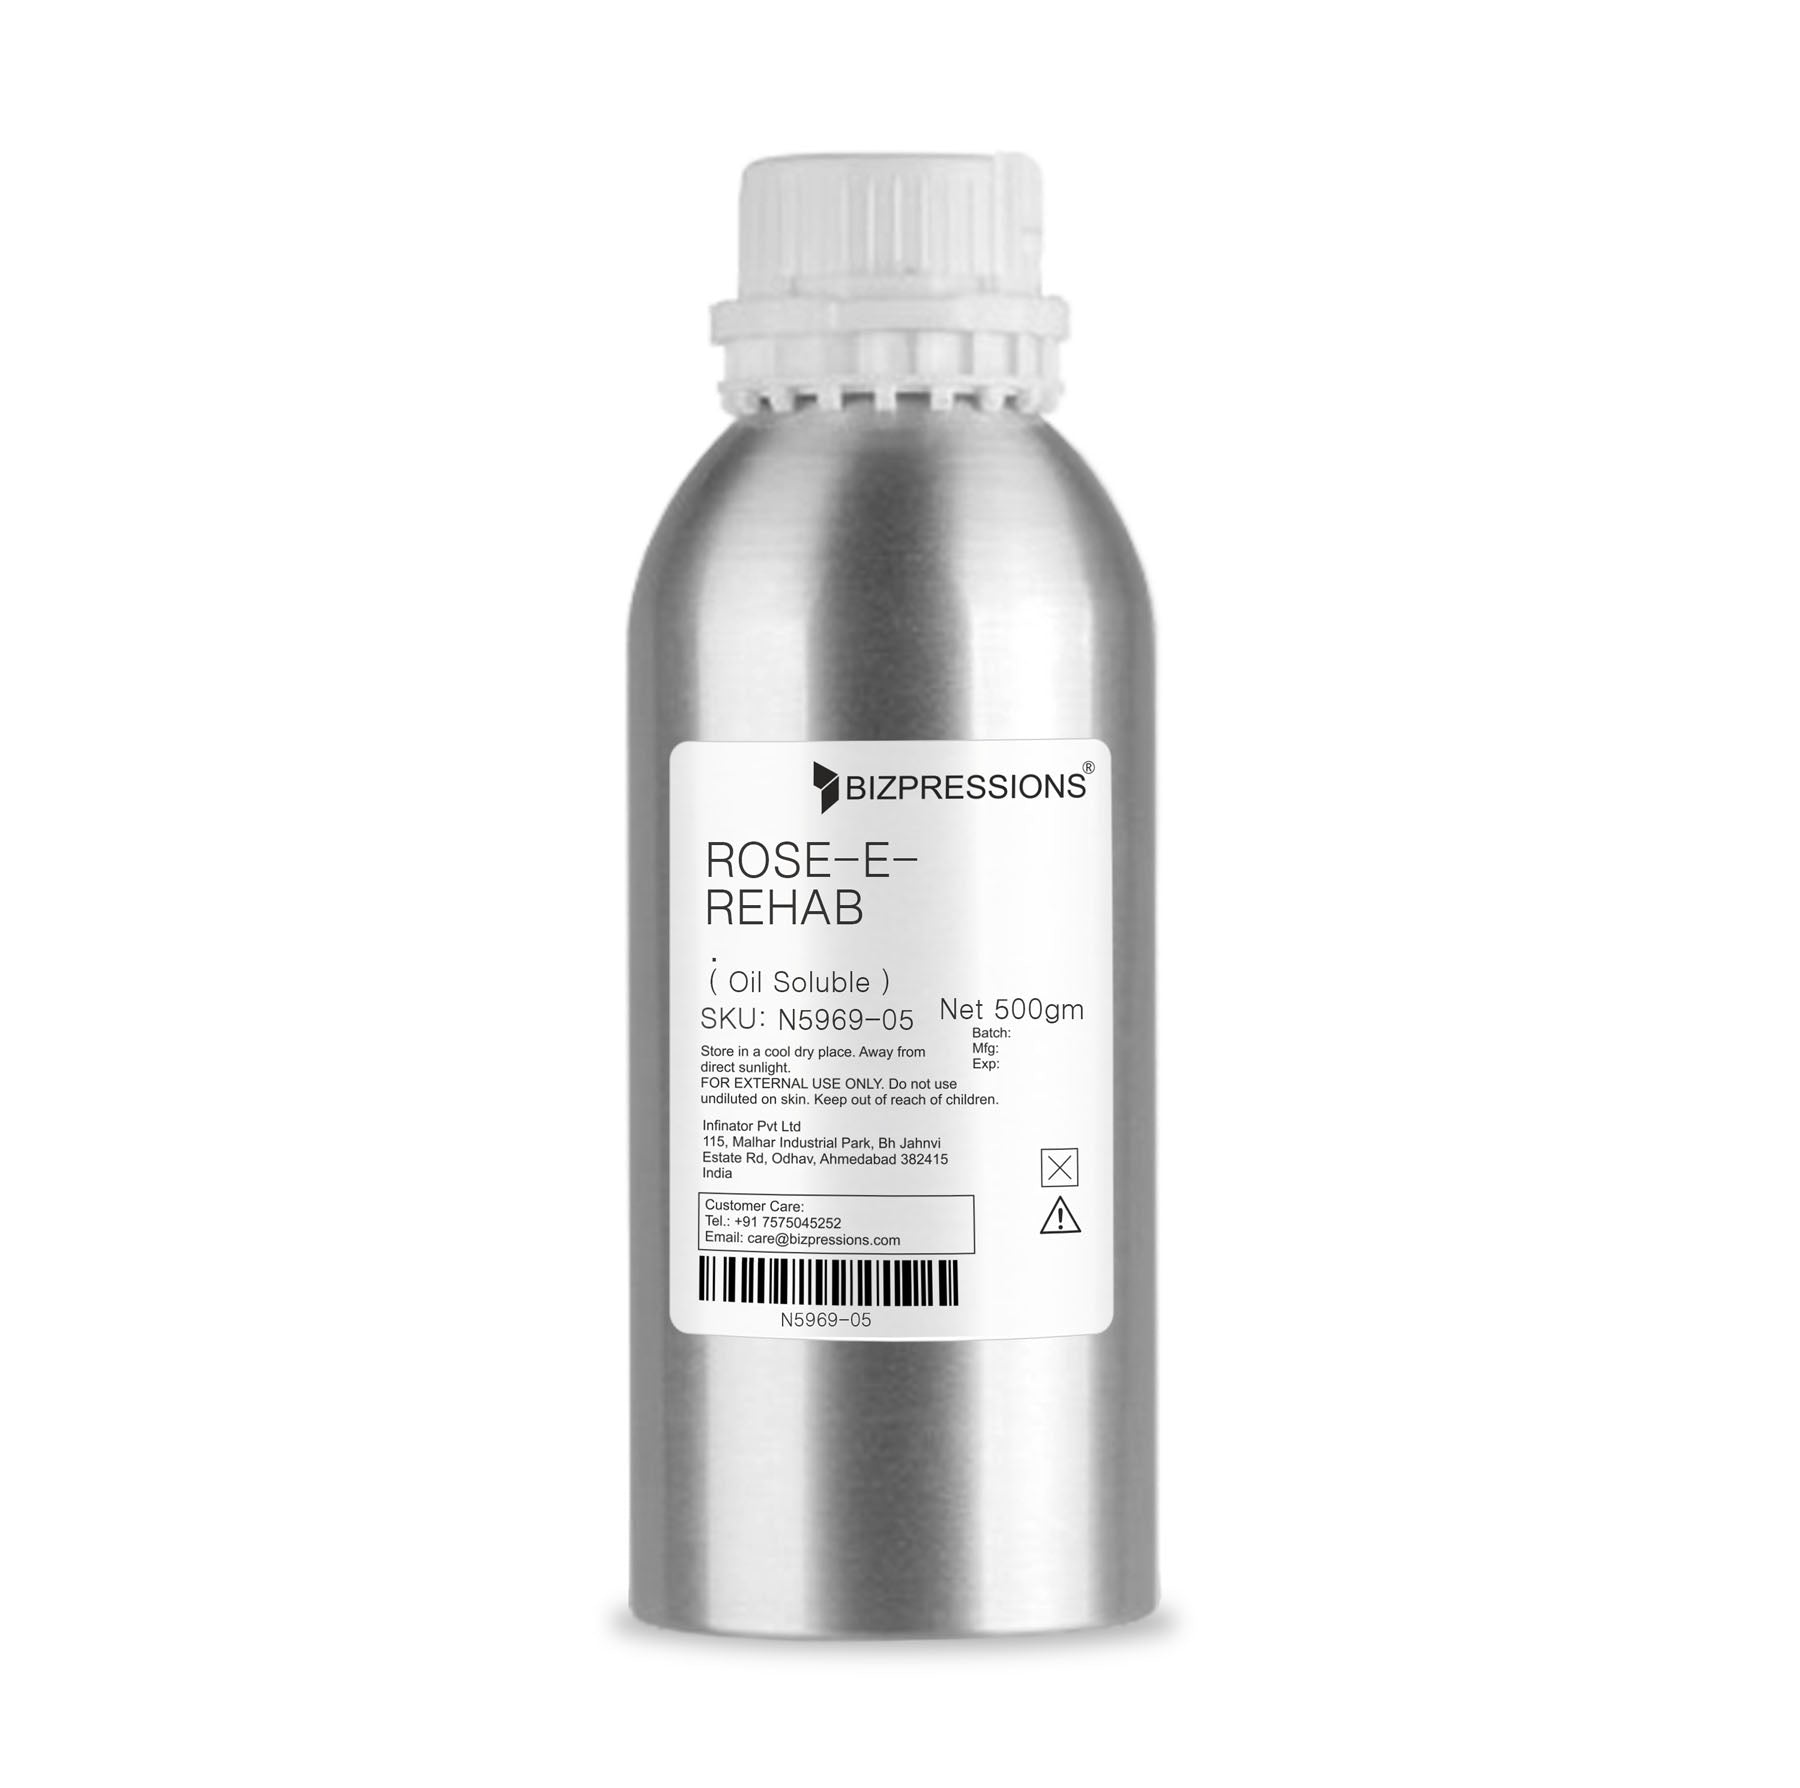 ROSE-E-REHAB - Fragrance ( Oil Soluble ) - 500 gm